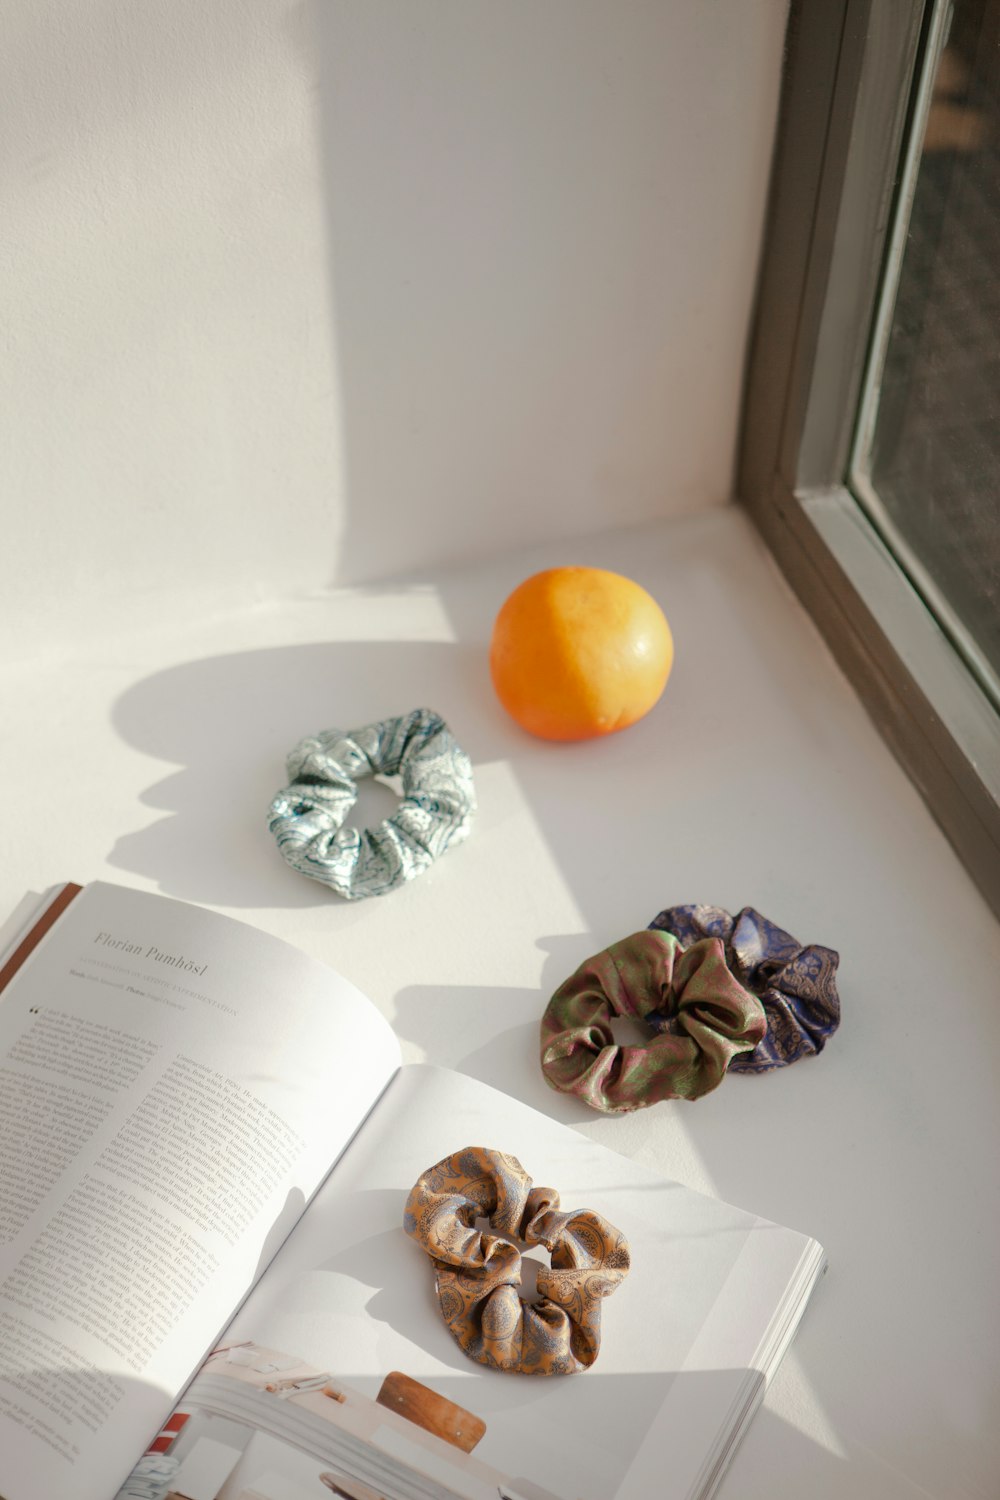 Un libro abierto sentado encima de una mesa junto a una naranja